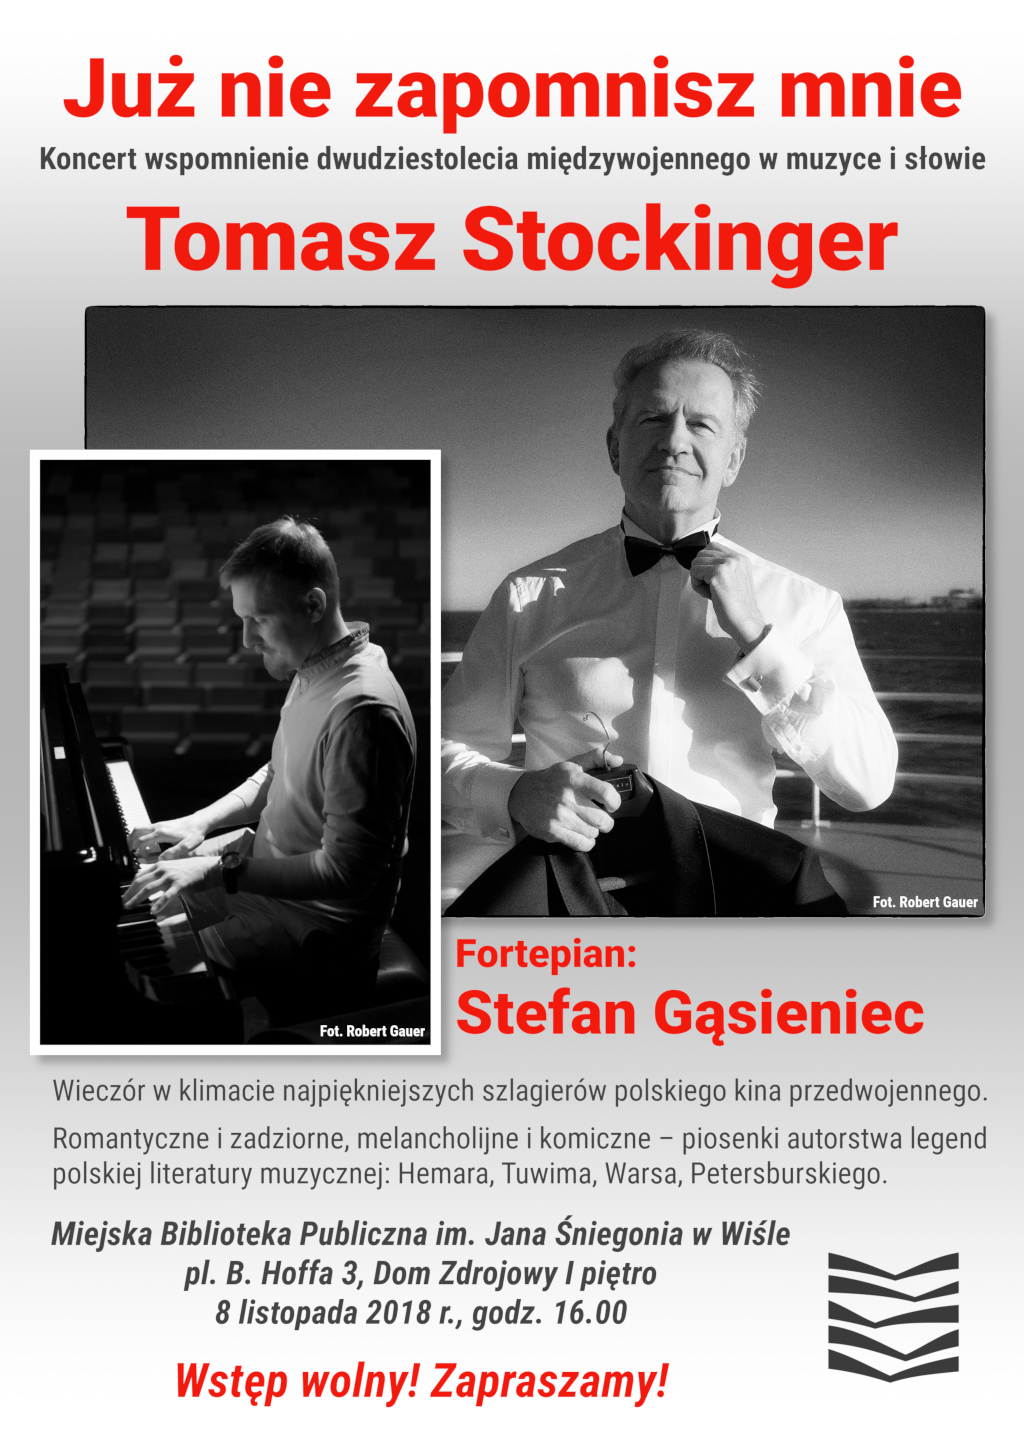 Koncert Tomasza Stockingera „Już nie zapomnisz mnie”